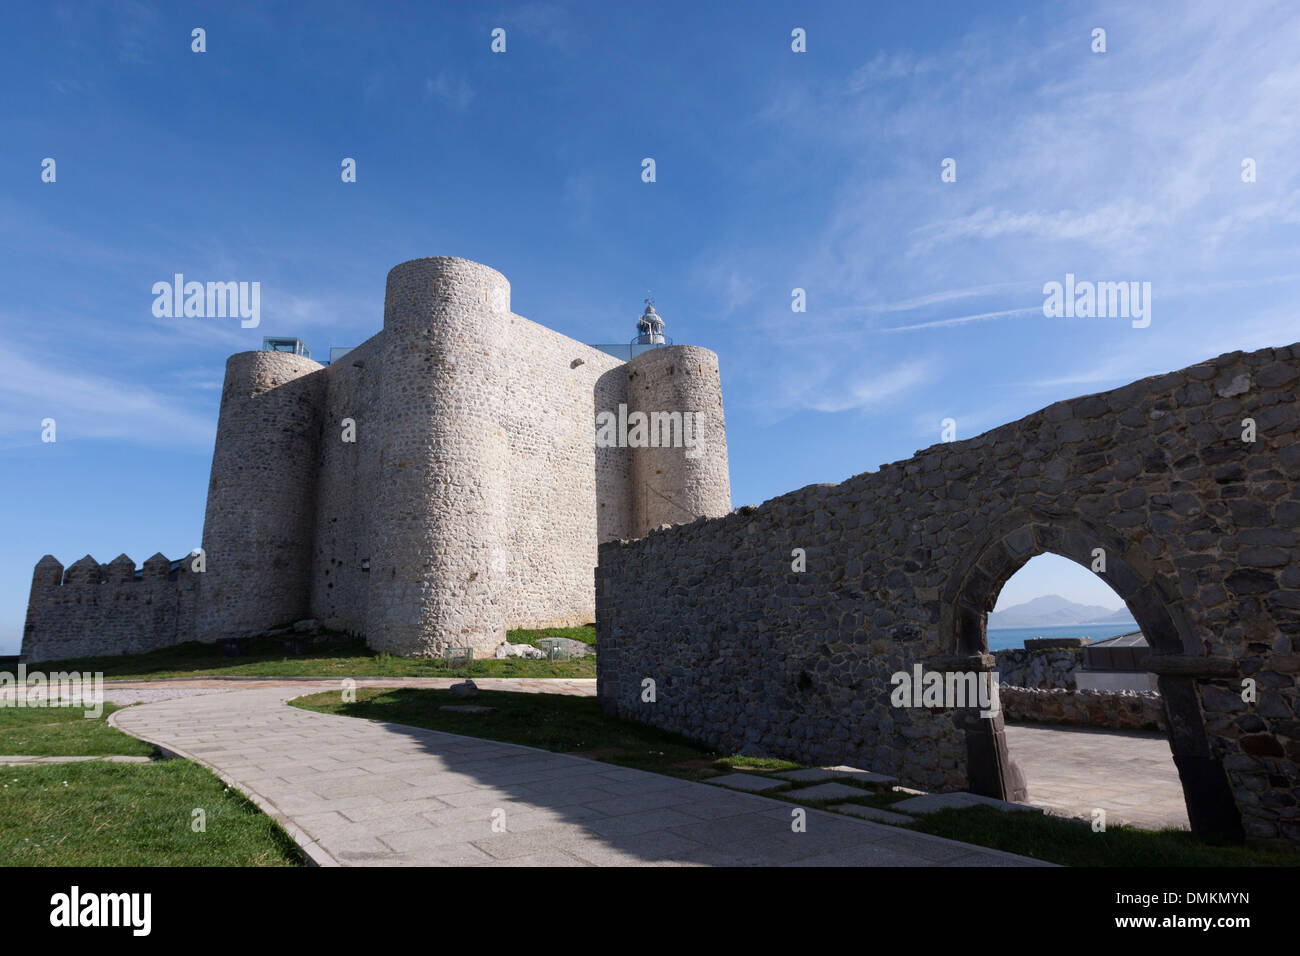 Castillo de Santa Ana se encuentra situado cerca del puerto de Castro Urdiales y albergaba un faro, Cantabria, ESPAÑA Foto de stock